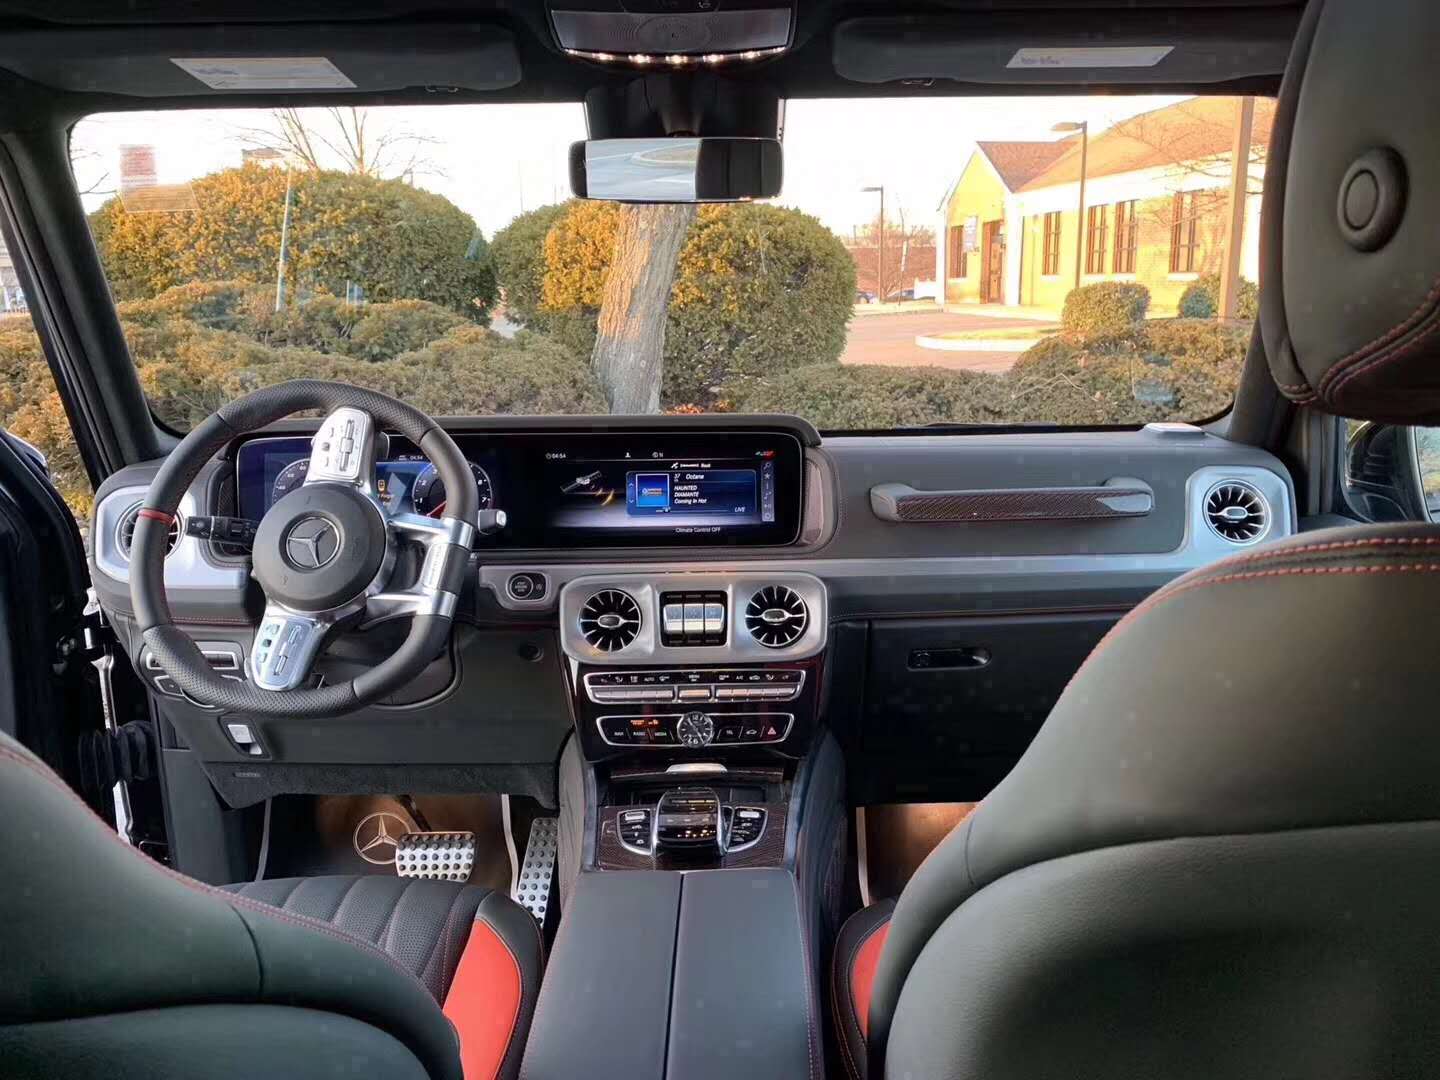 新车内饰方面,全新2019款奔驰g63 amg内饰设计的较为豪华,新车还配备